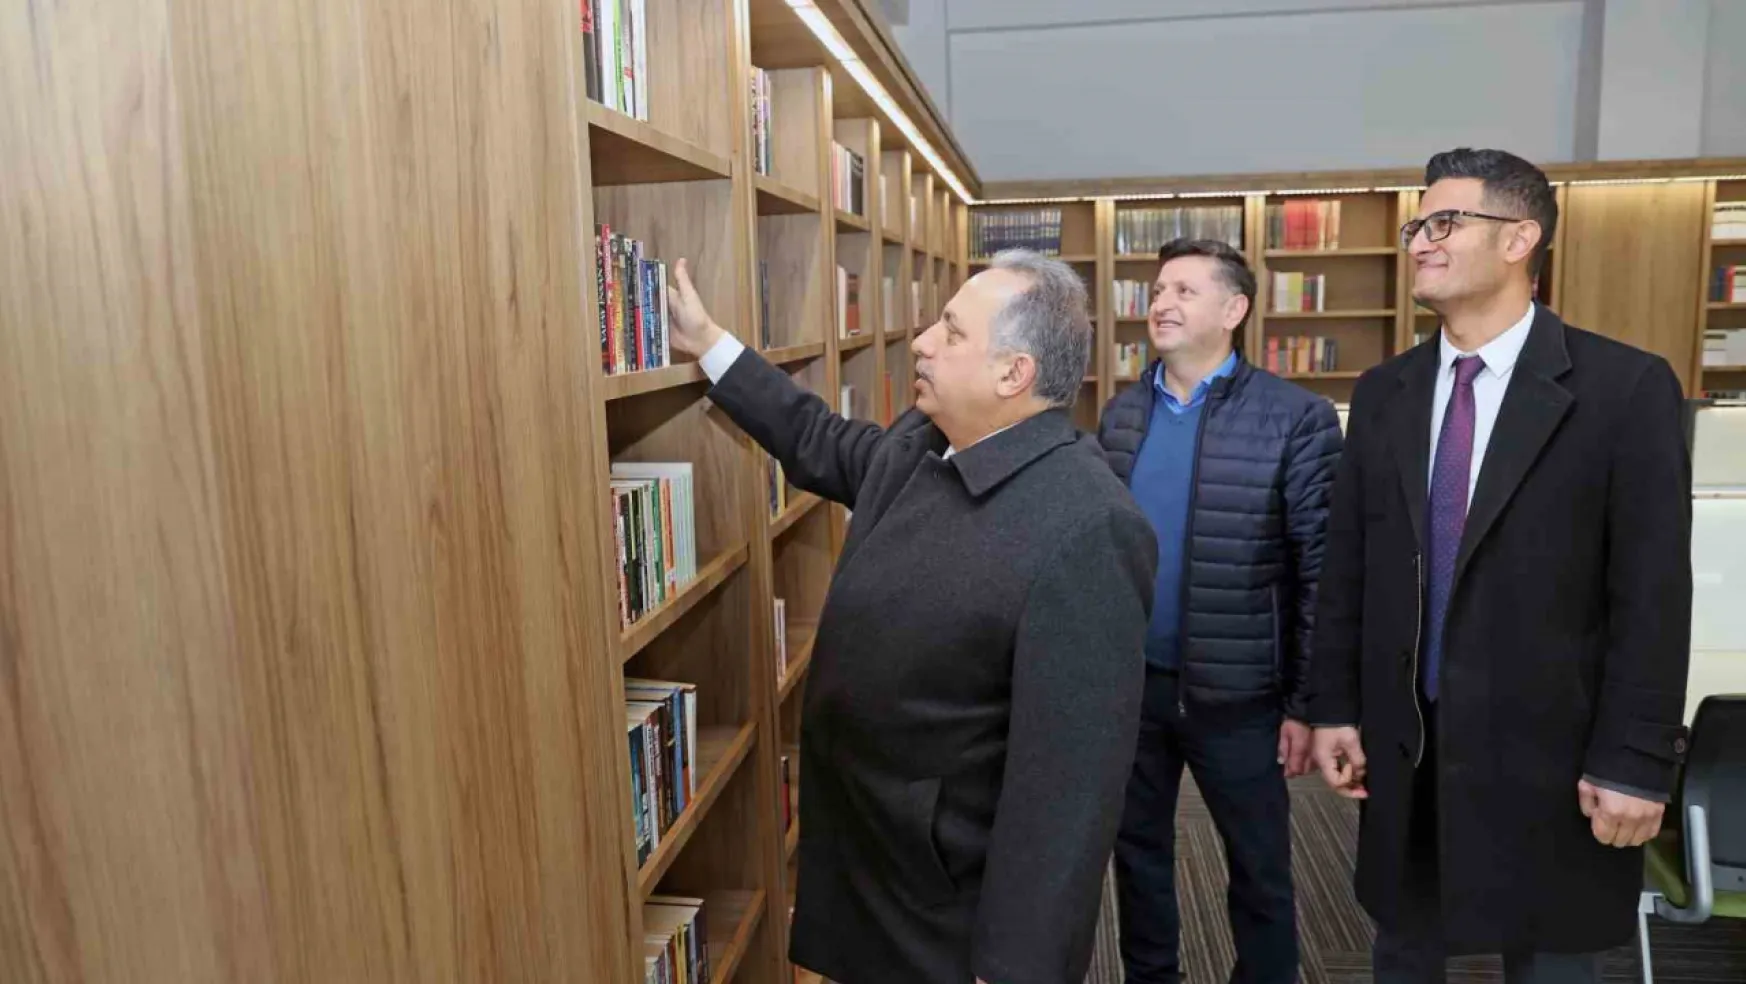 Talas Mehmet Karamercan Kütüphanesi'nde büyük gün